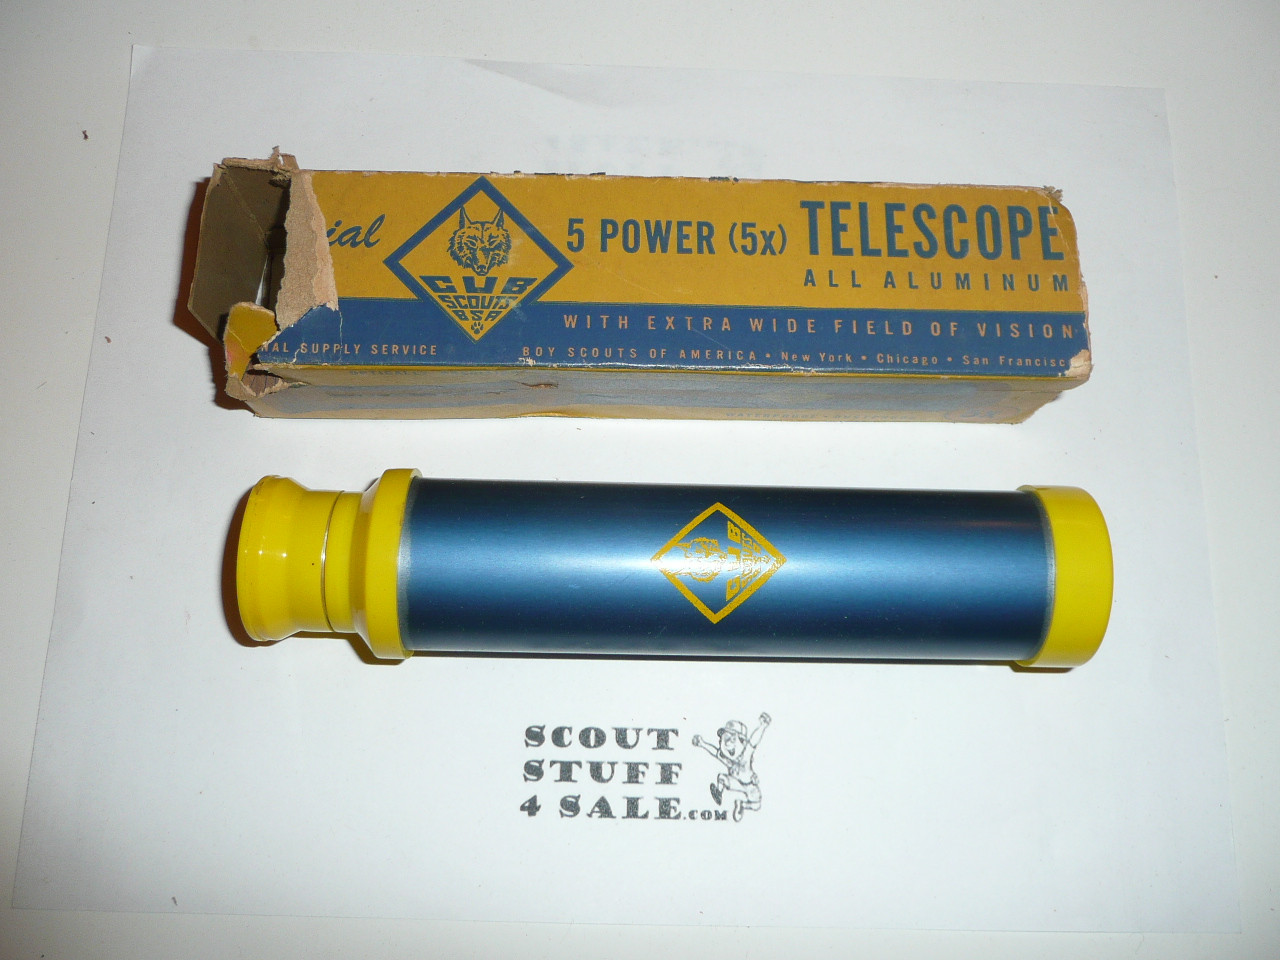 Official Cub Scout Telescope in original Box